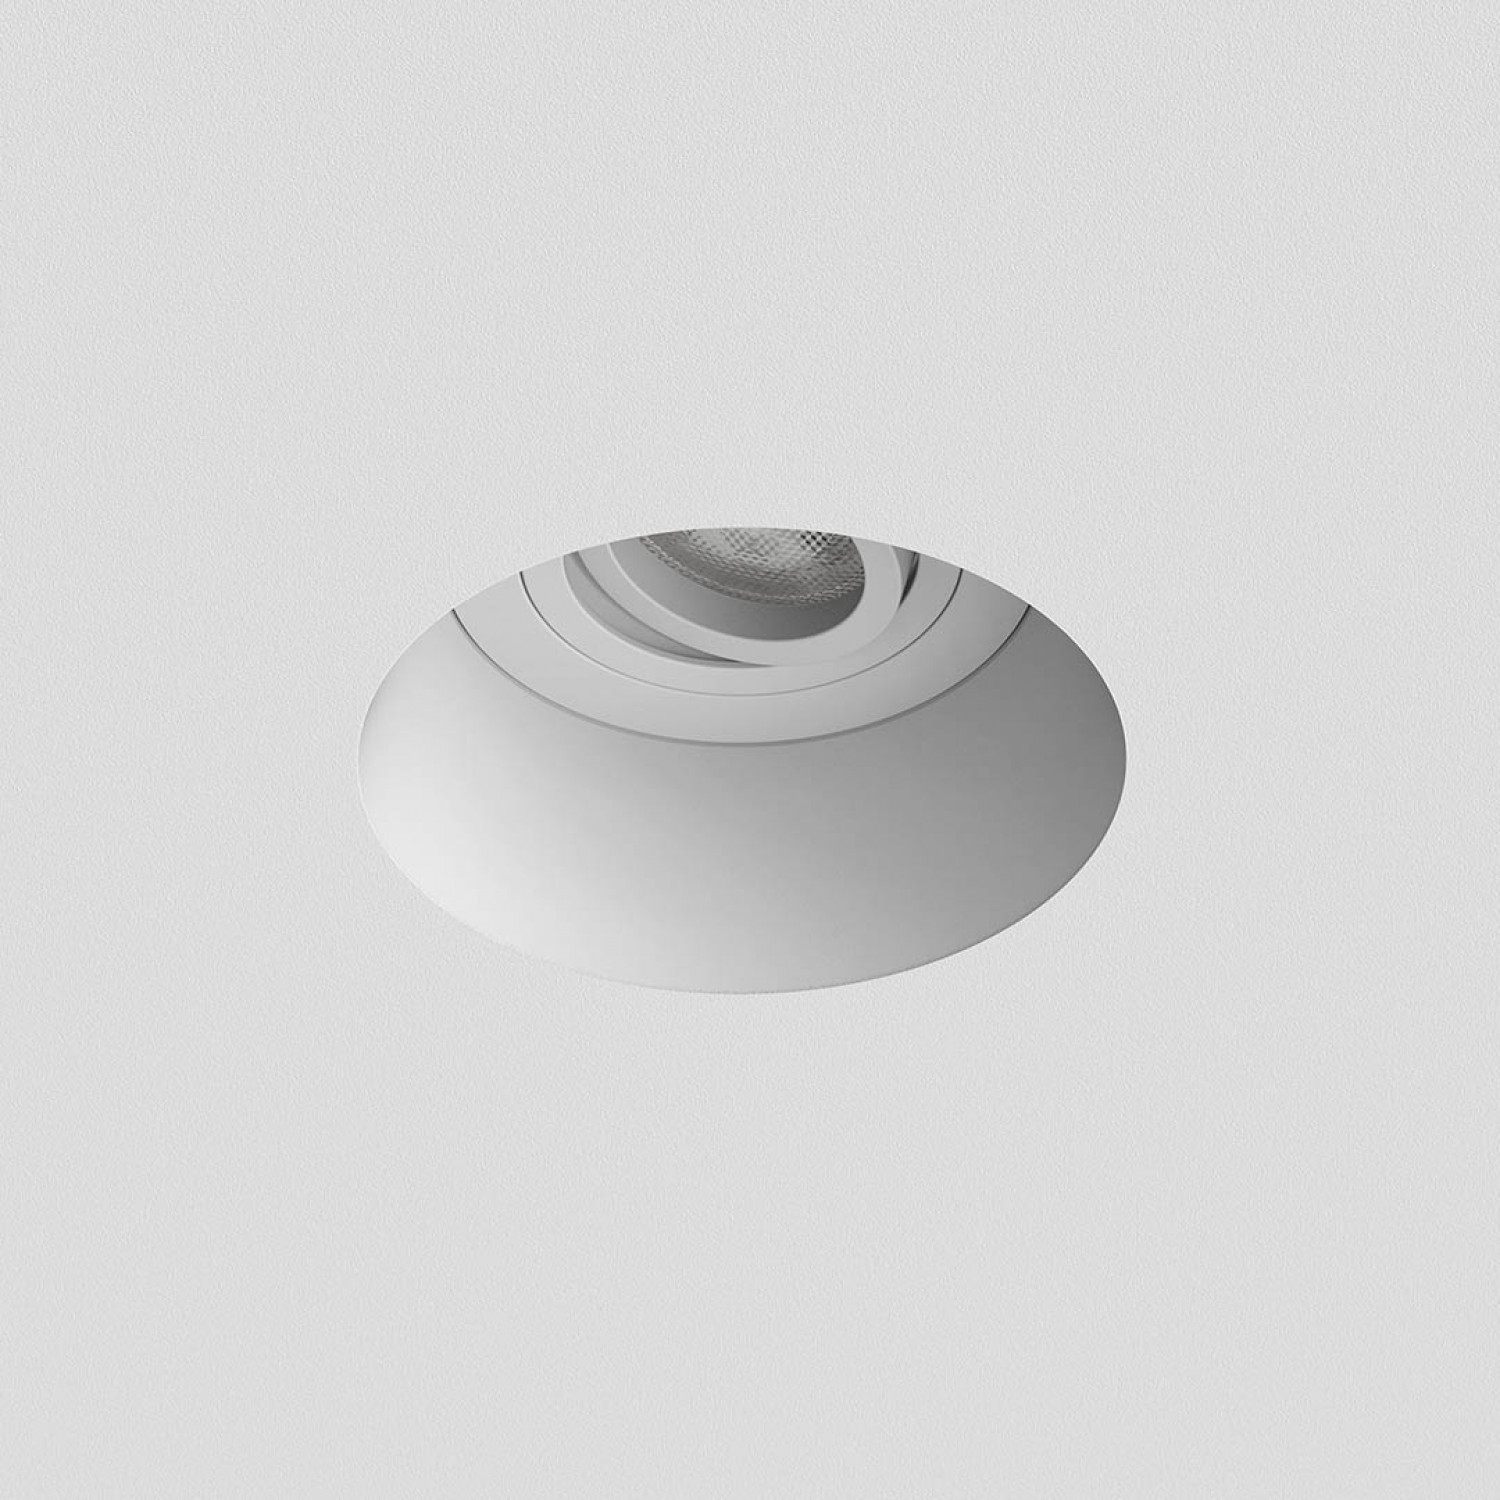 Врезной точечный светильник Astro Blanco Round Adjustable 1253005